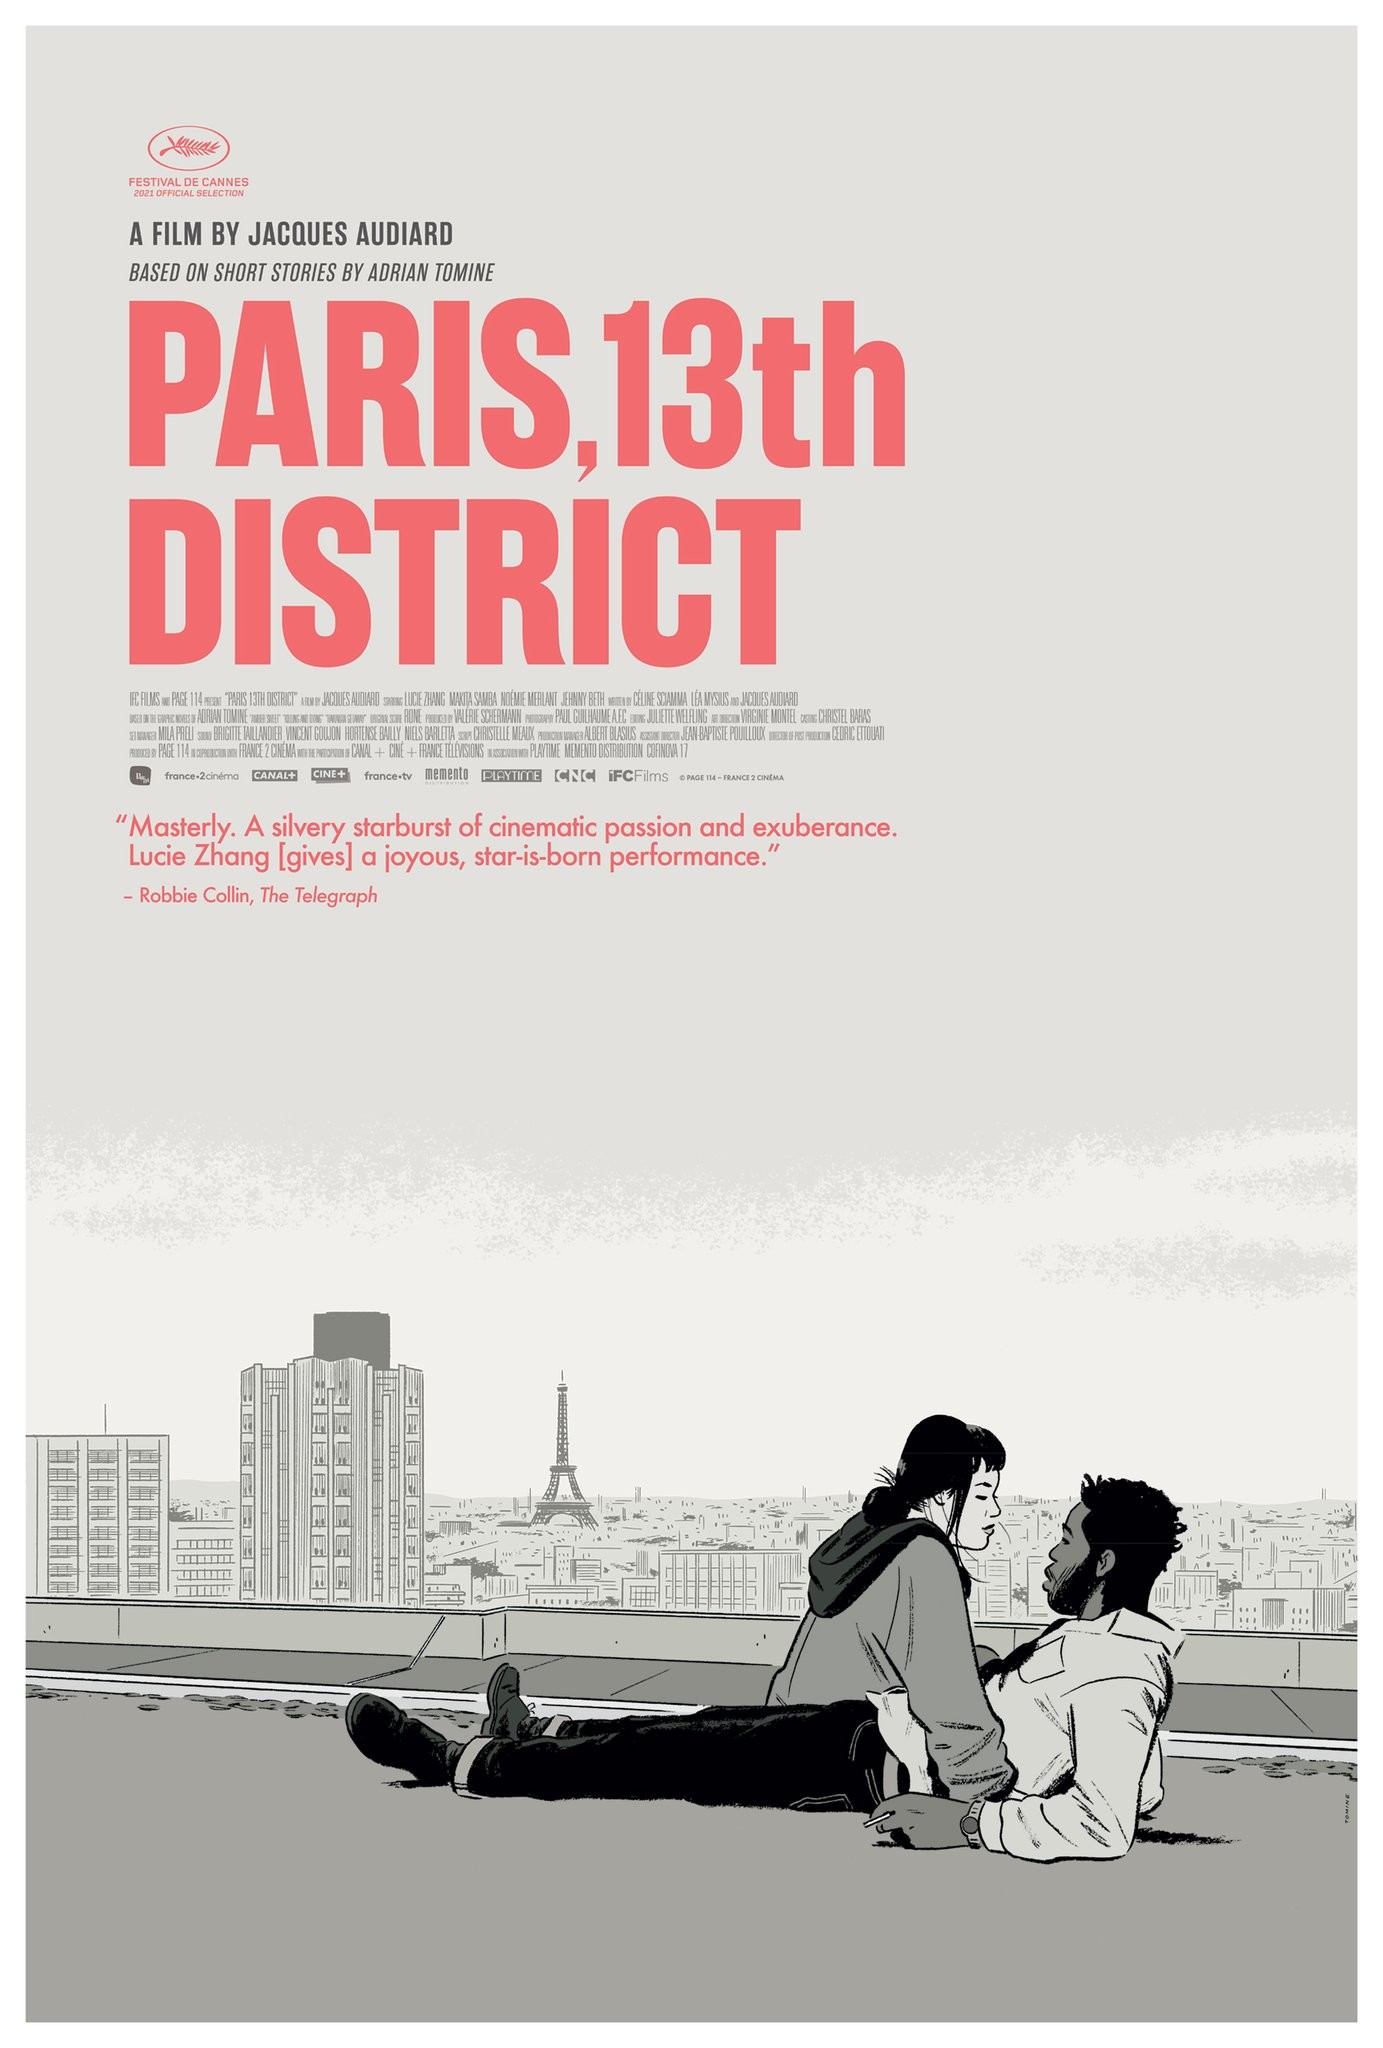 Paris, 13th District (+intro)